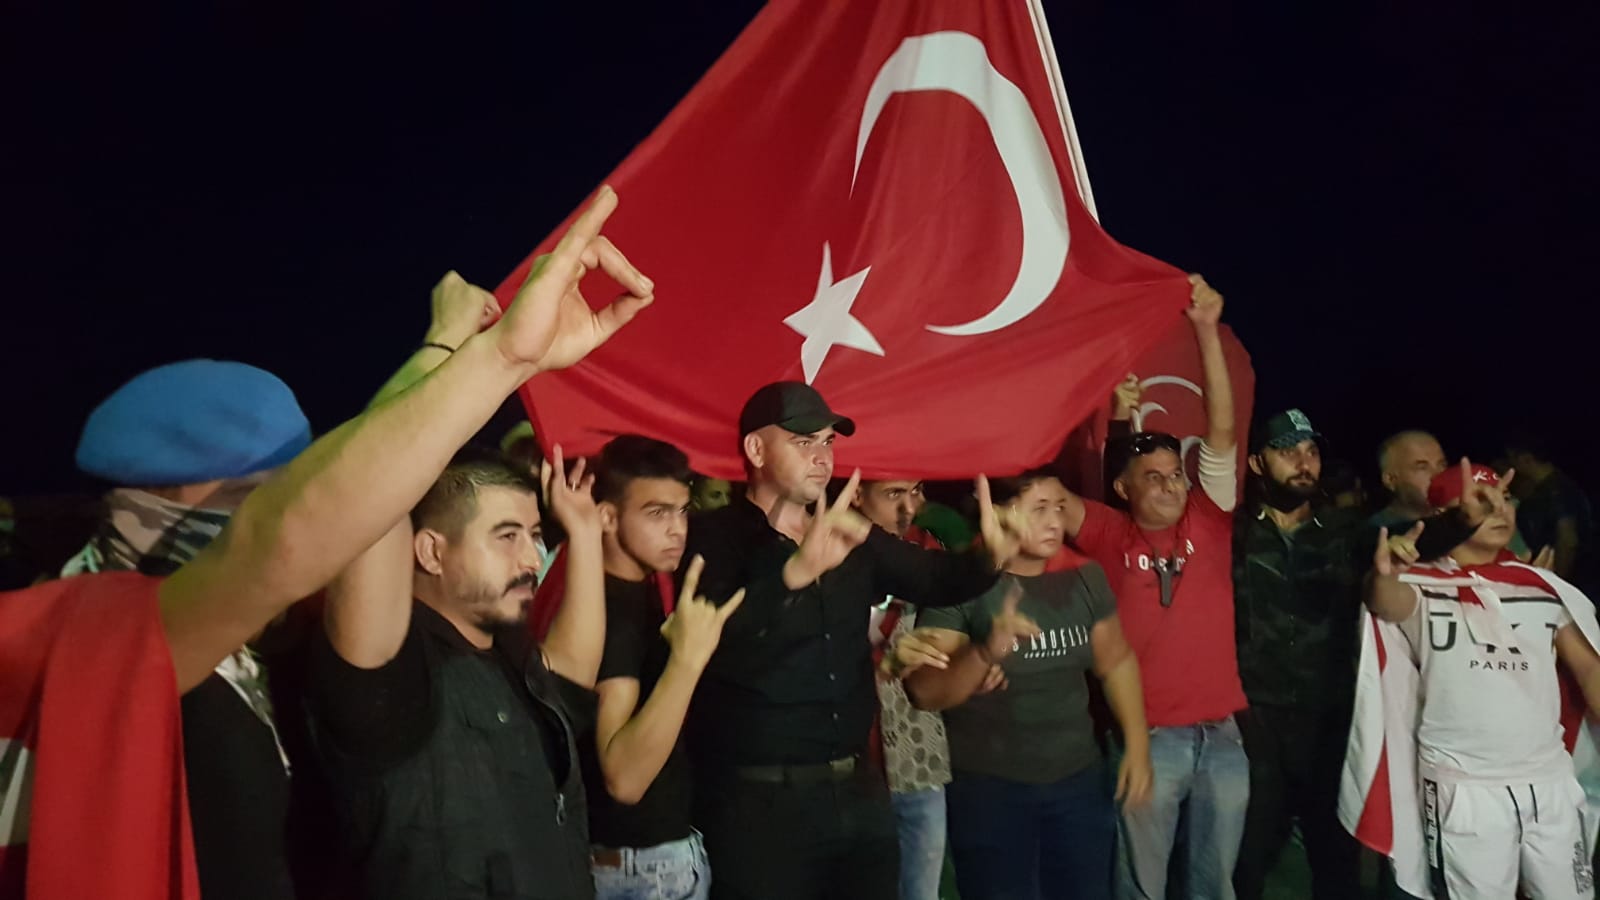 Derinya Sınır Kapısı’nda Rumların Gerçekleştirdiği Eyleme Türklerden Protesto